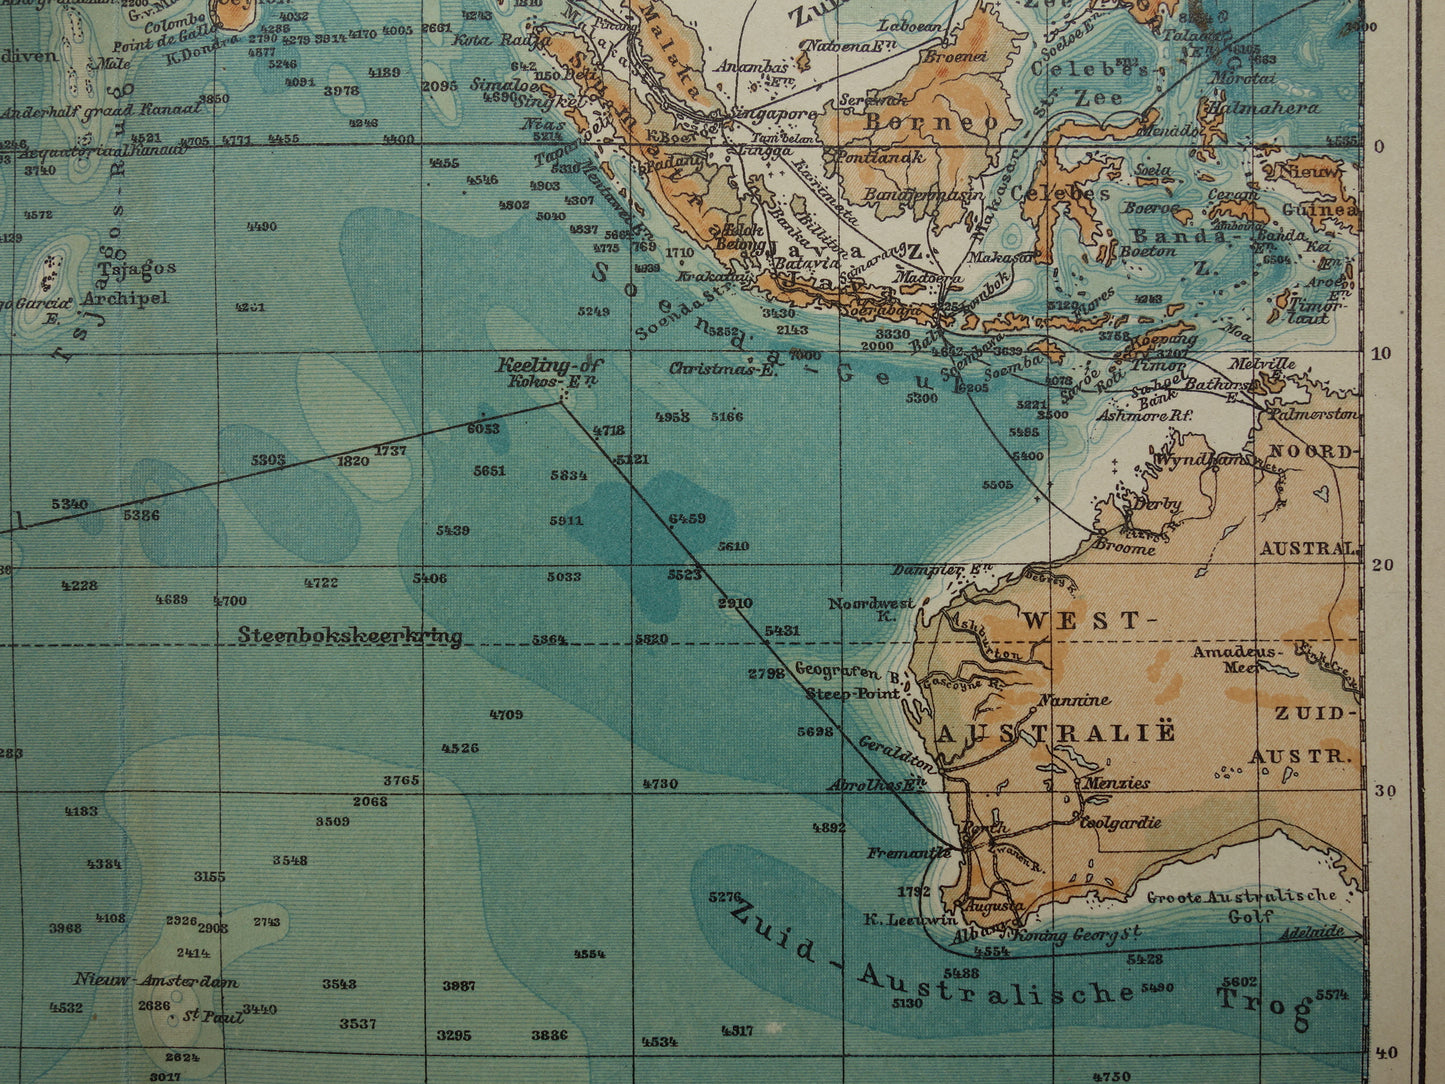 Oude kaart van de Indische Oceaan Originele 110+ jaar oude antieke Nederlandse landkaart zeekaart